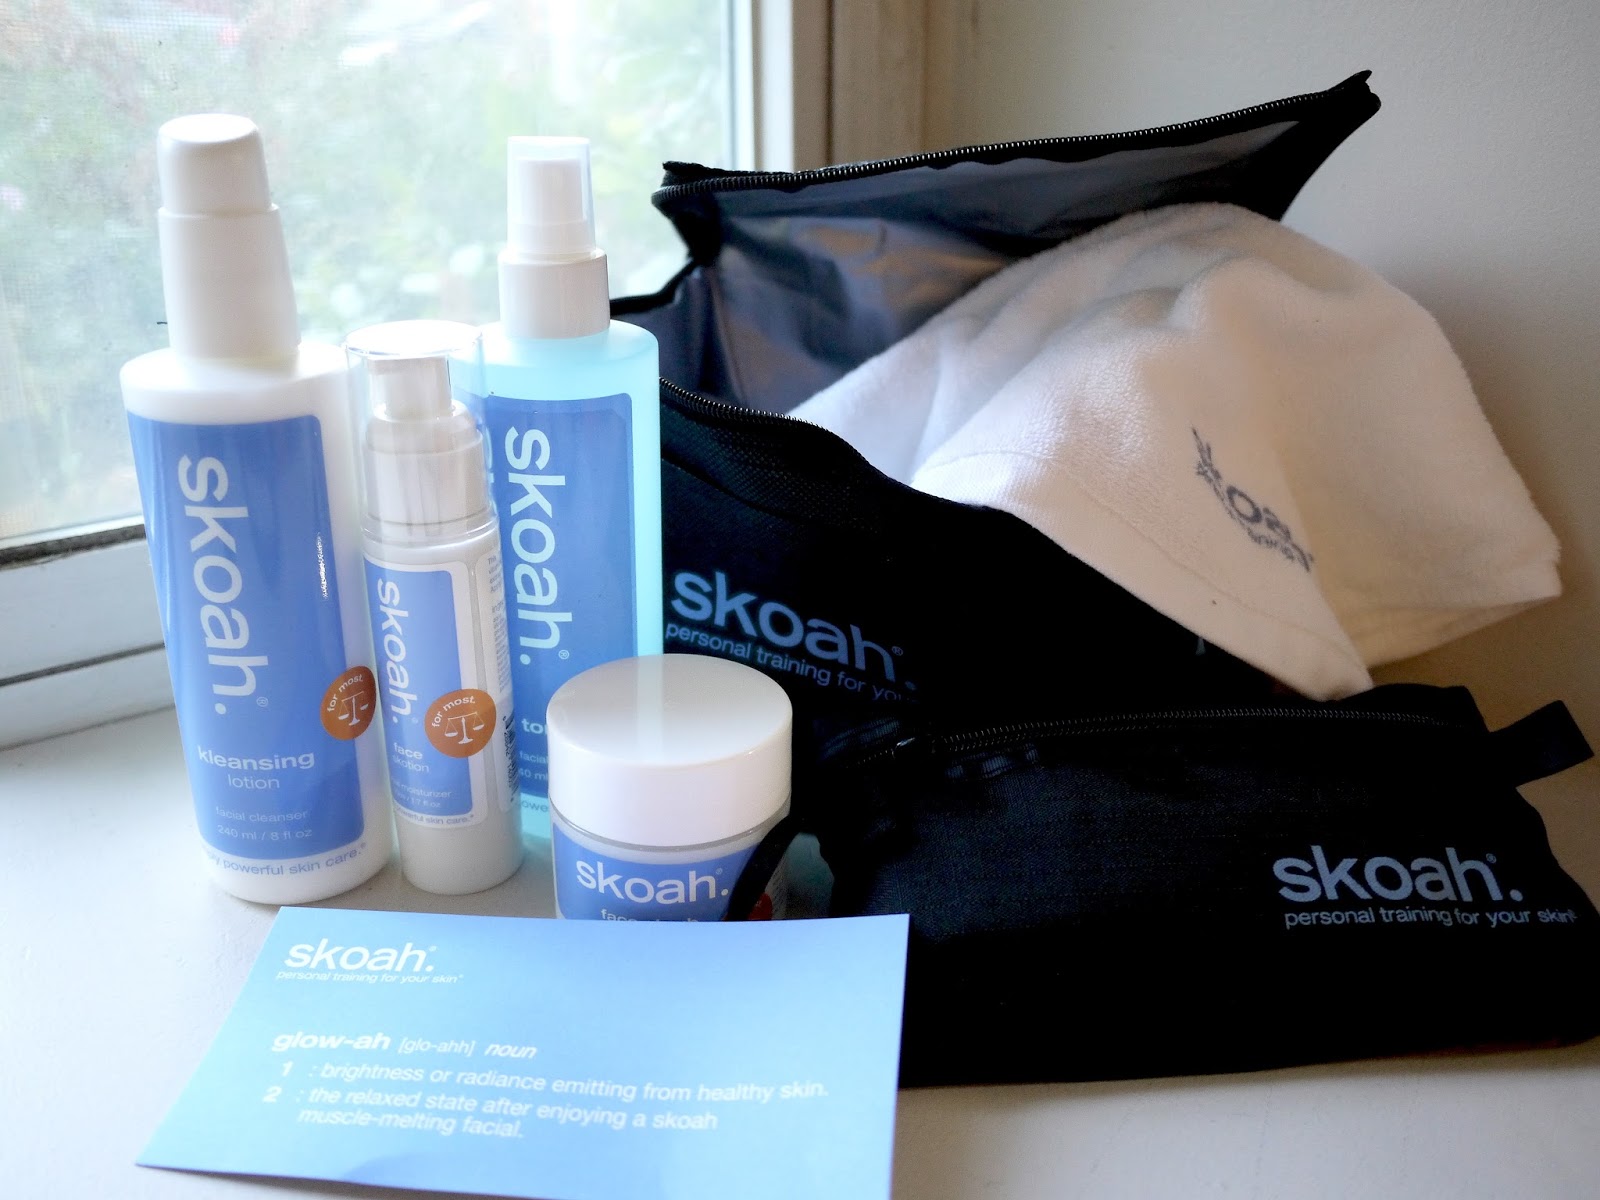 skoah even-keeled kit review kleasning lotion, face skrub, tonik, face skotion